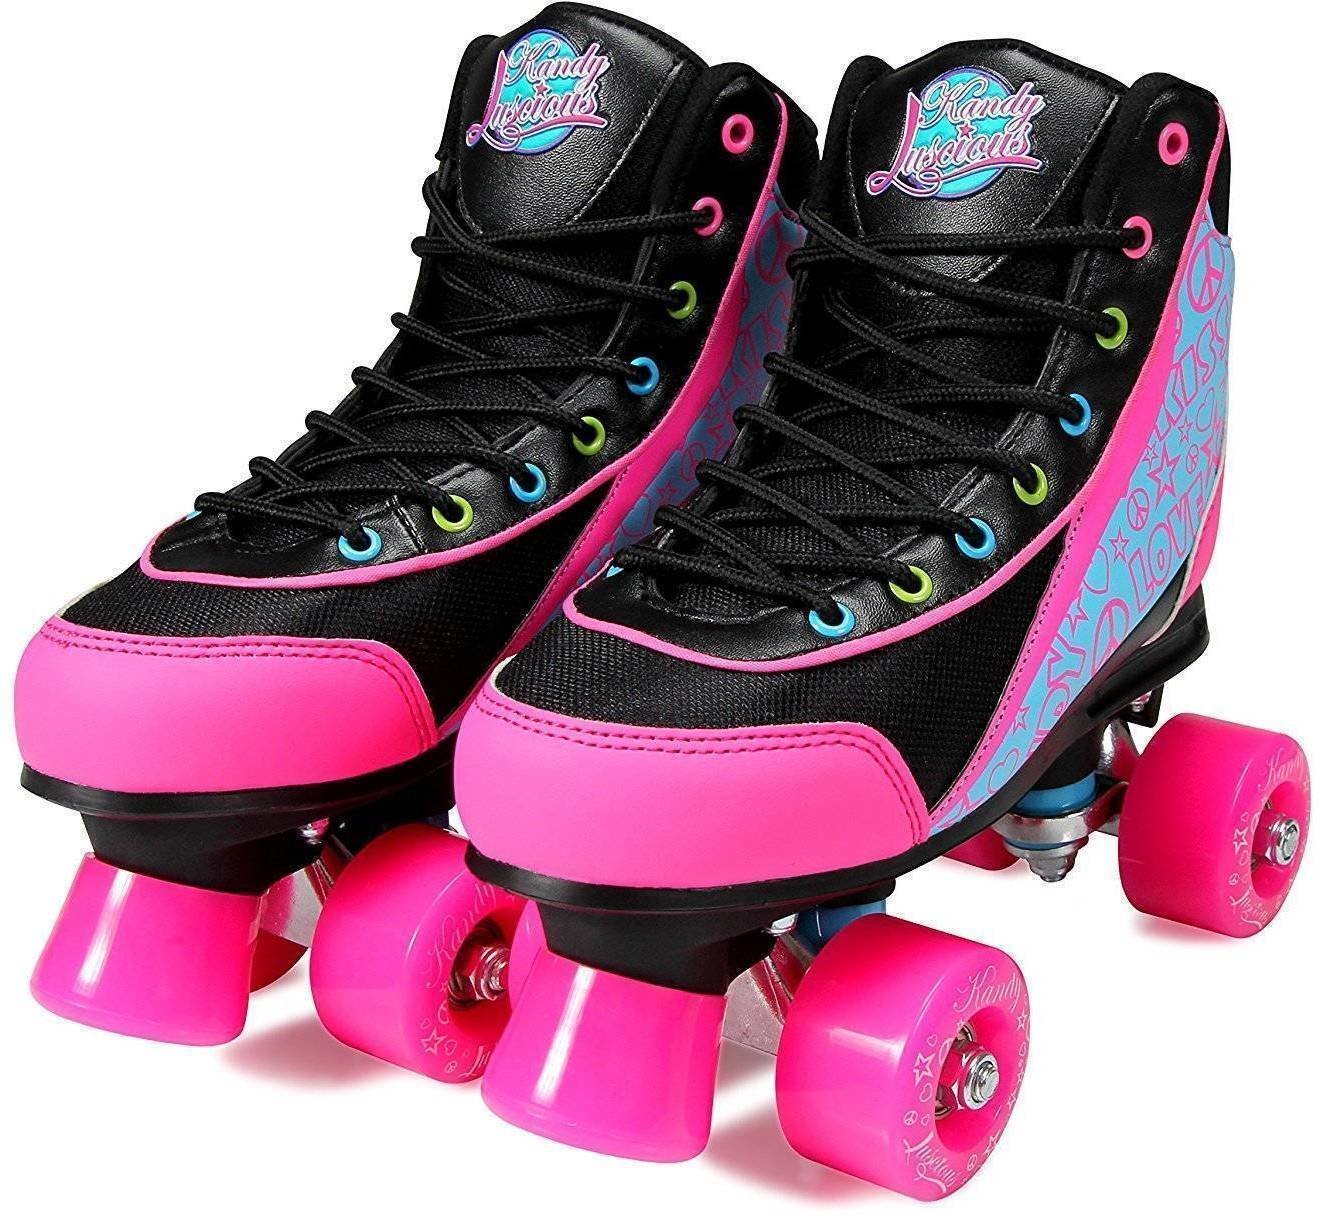 Πατίνια Luscious Skates Disco Diva 34 Black/Pink